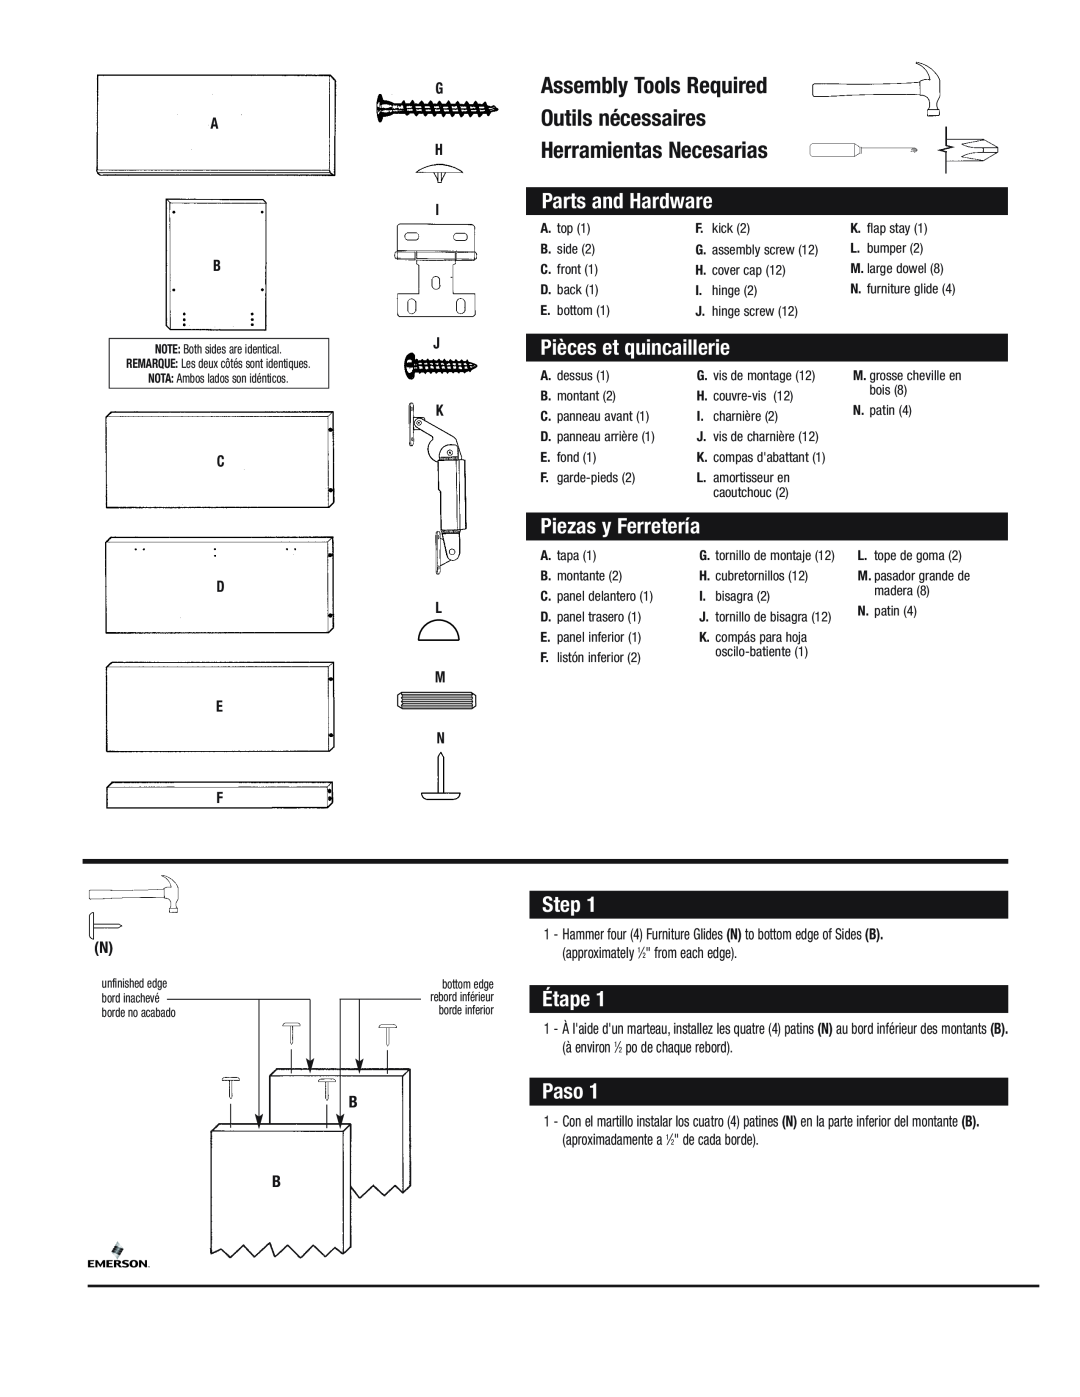 Emerson STCH manual Parts and Hardware, Pièces et quincaillerie, Piezas y Ferretería, Step, Étape, Paso, G A H, C D E F 